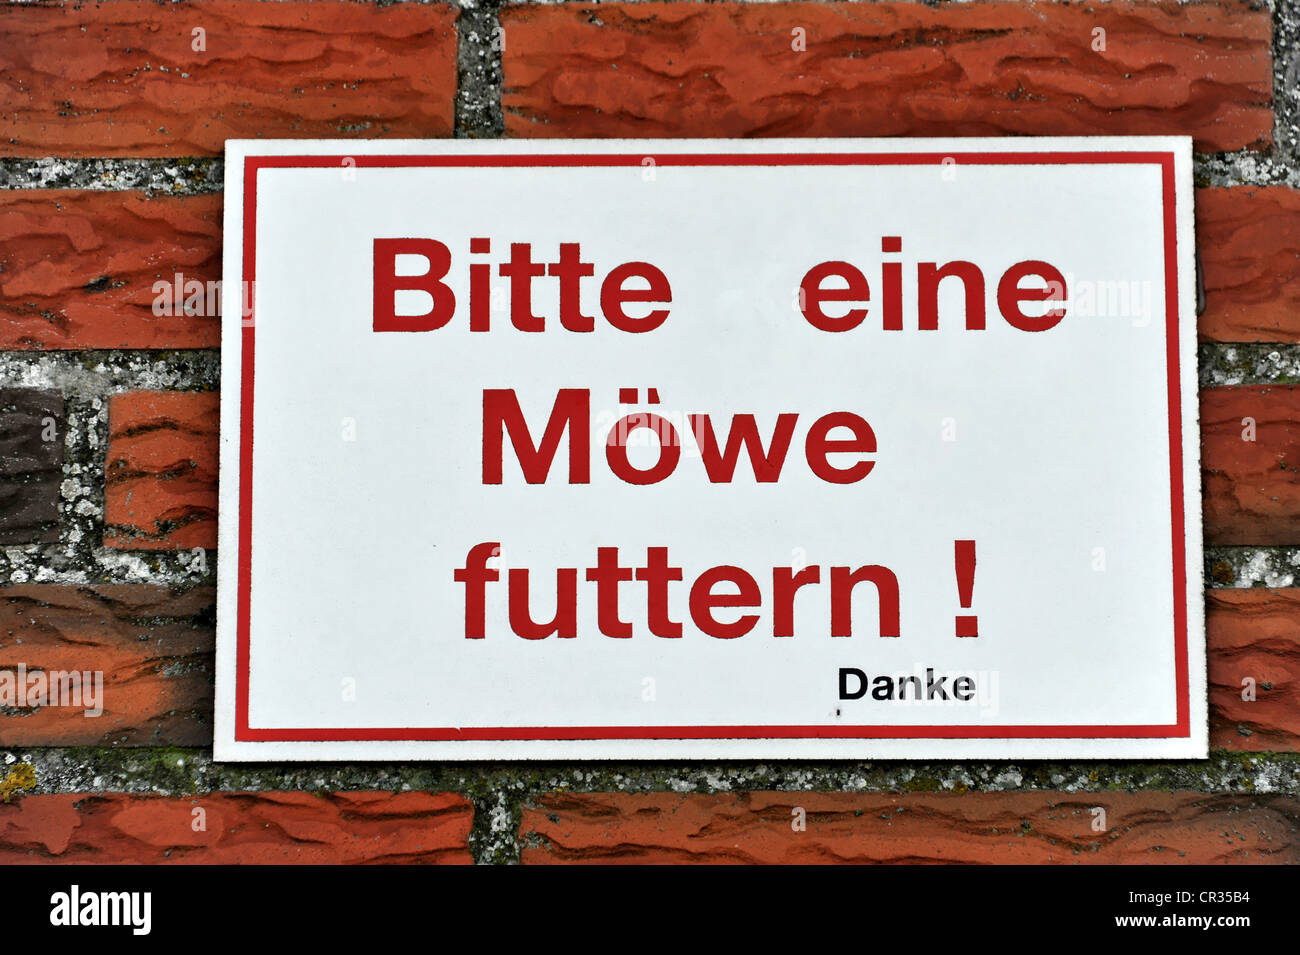 Bitte eine Moewe futtern, por favor alimentar una gaviota, alteración de la señal en un restaurante, Eidersperrwerk, Eider andanada Foto de stock